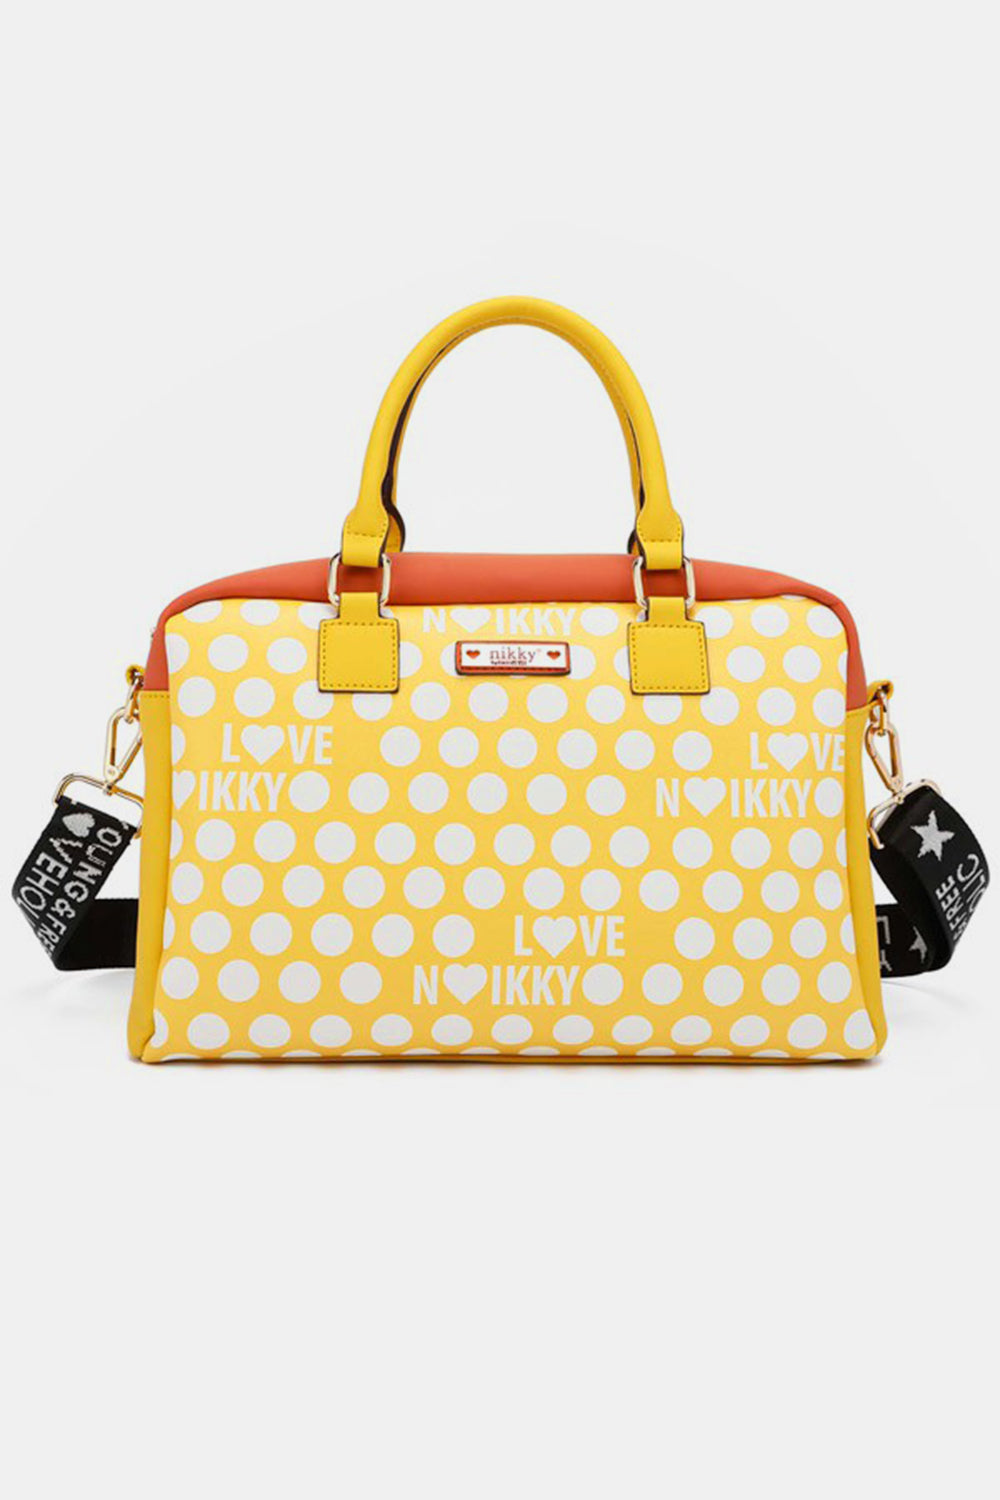 Nicole Lee USA Contrast Polka Dot Handbag Yellow One Size 